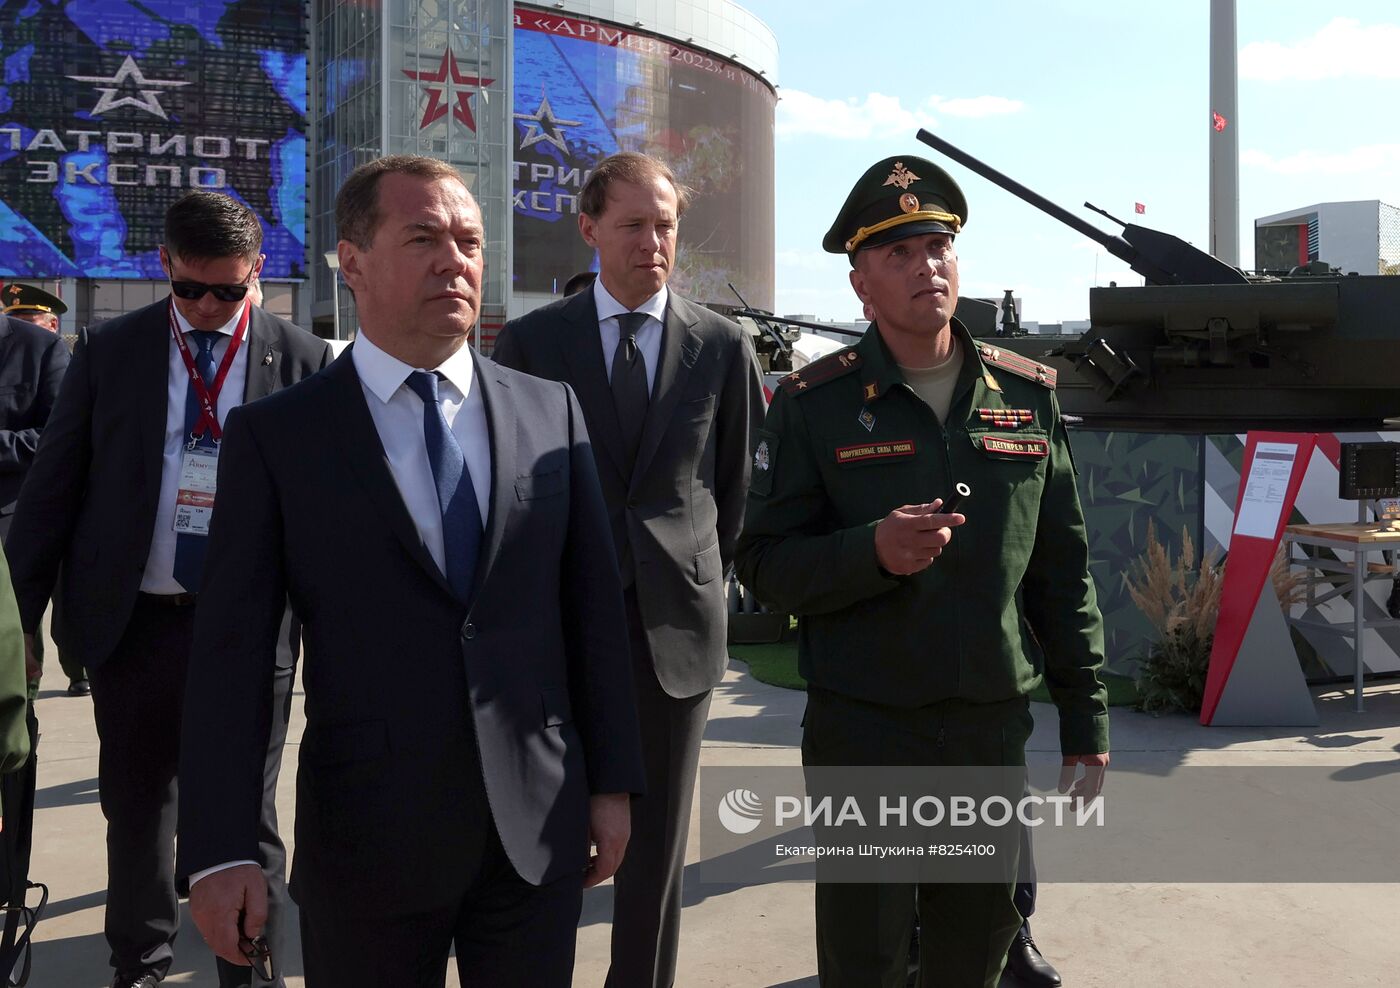 Заместитель председателя Совета безопасности РФ Д. Медведев посетил форум "Армия-2022"